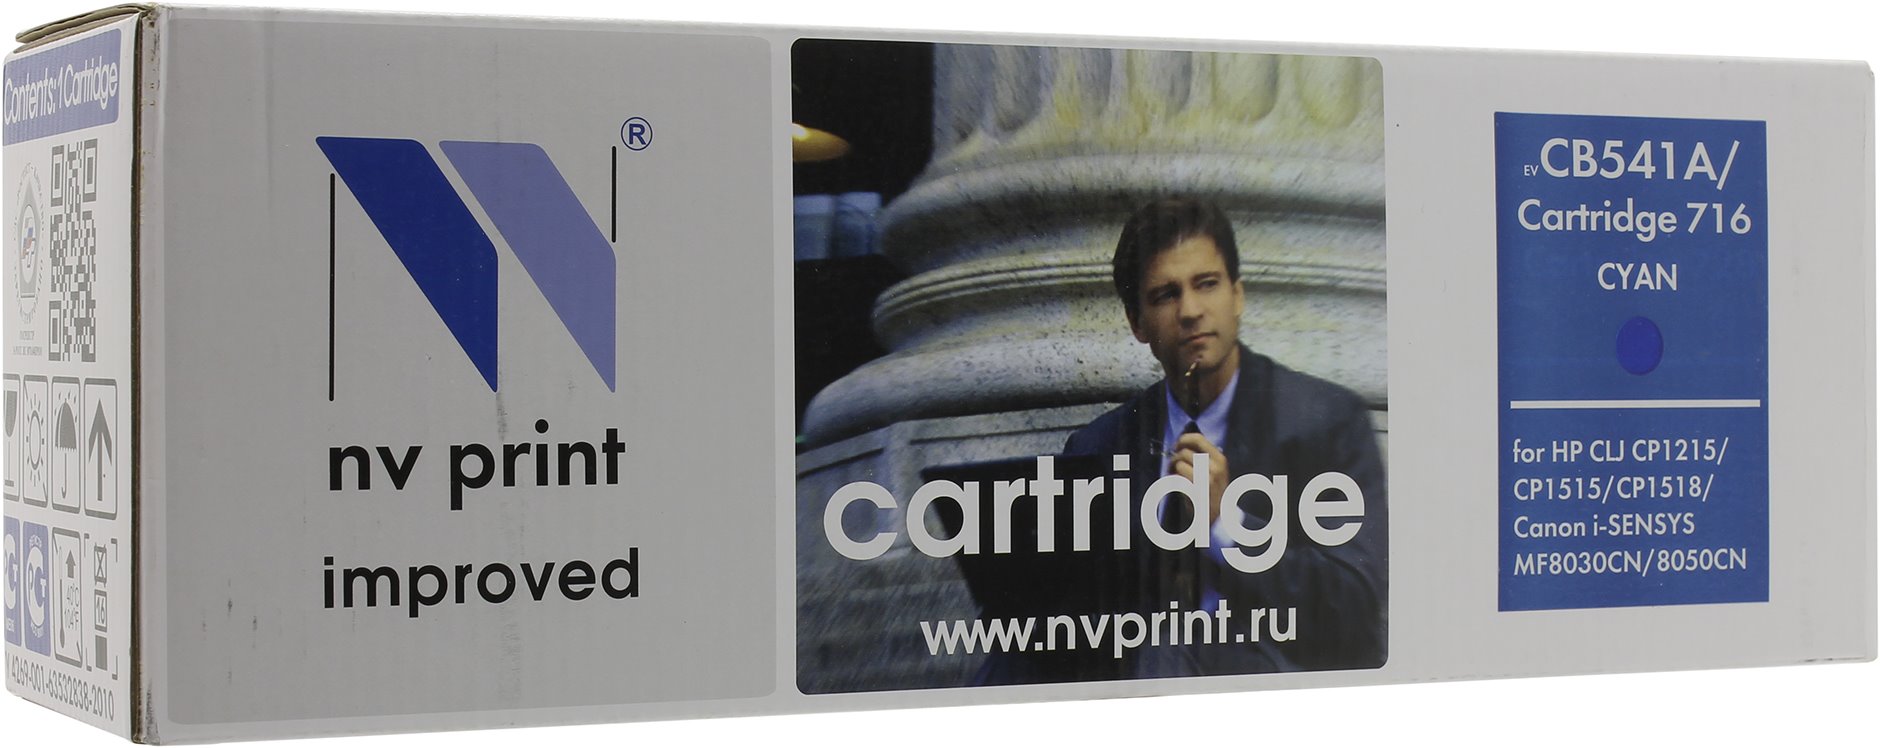   NV-Print  HP Color LaserJet CP1215/1515/ CM1312 Cyan, CB541A